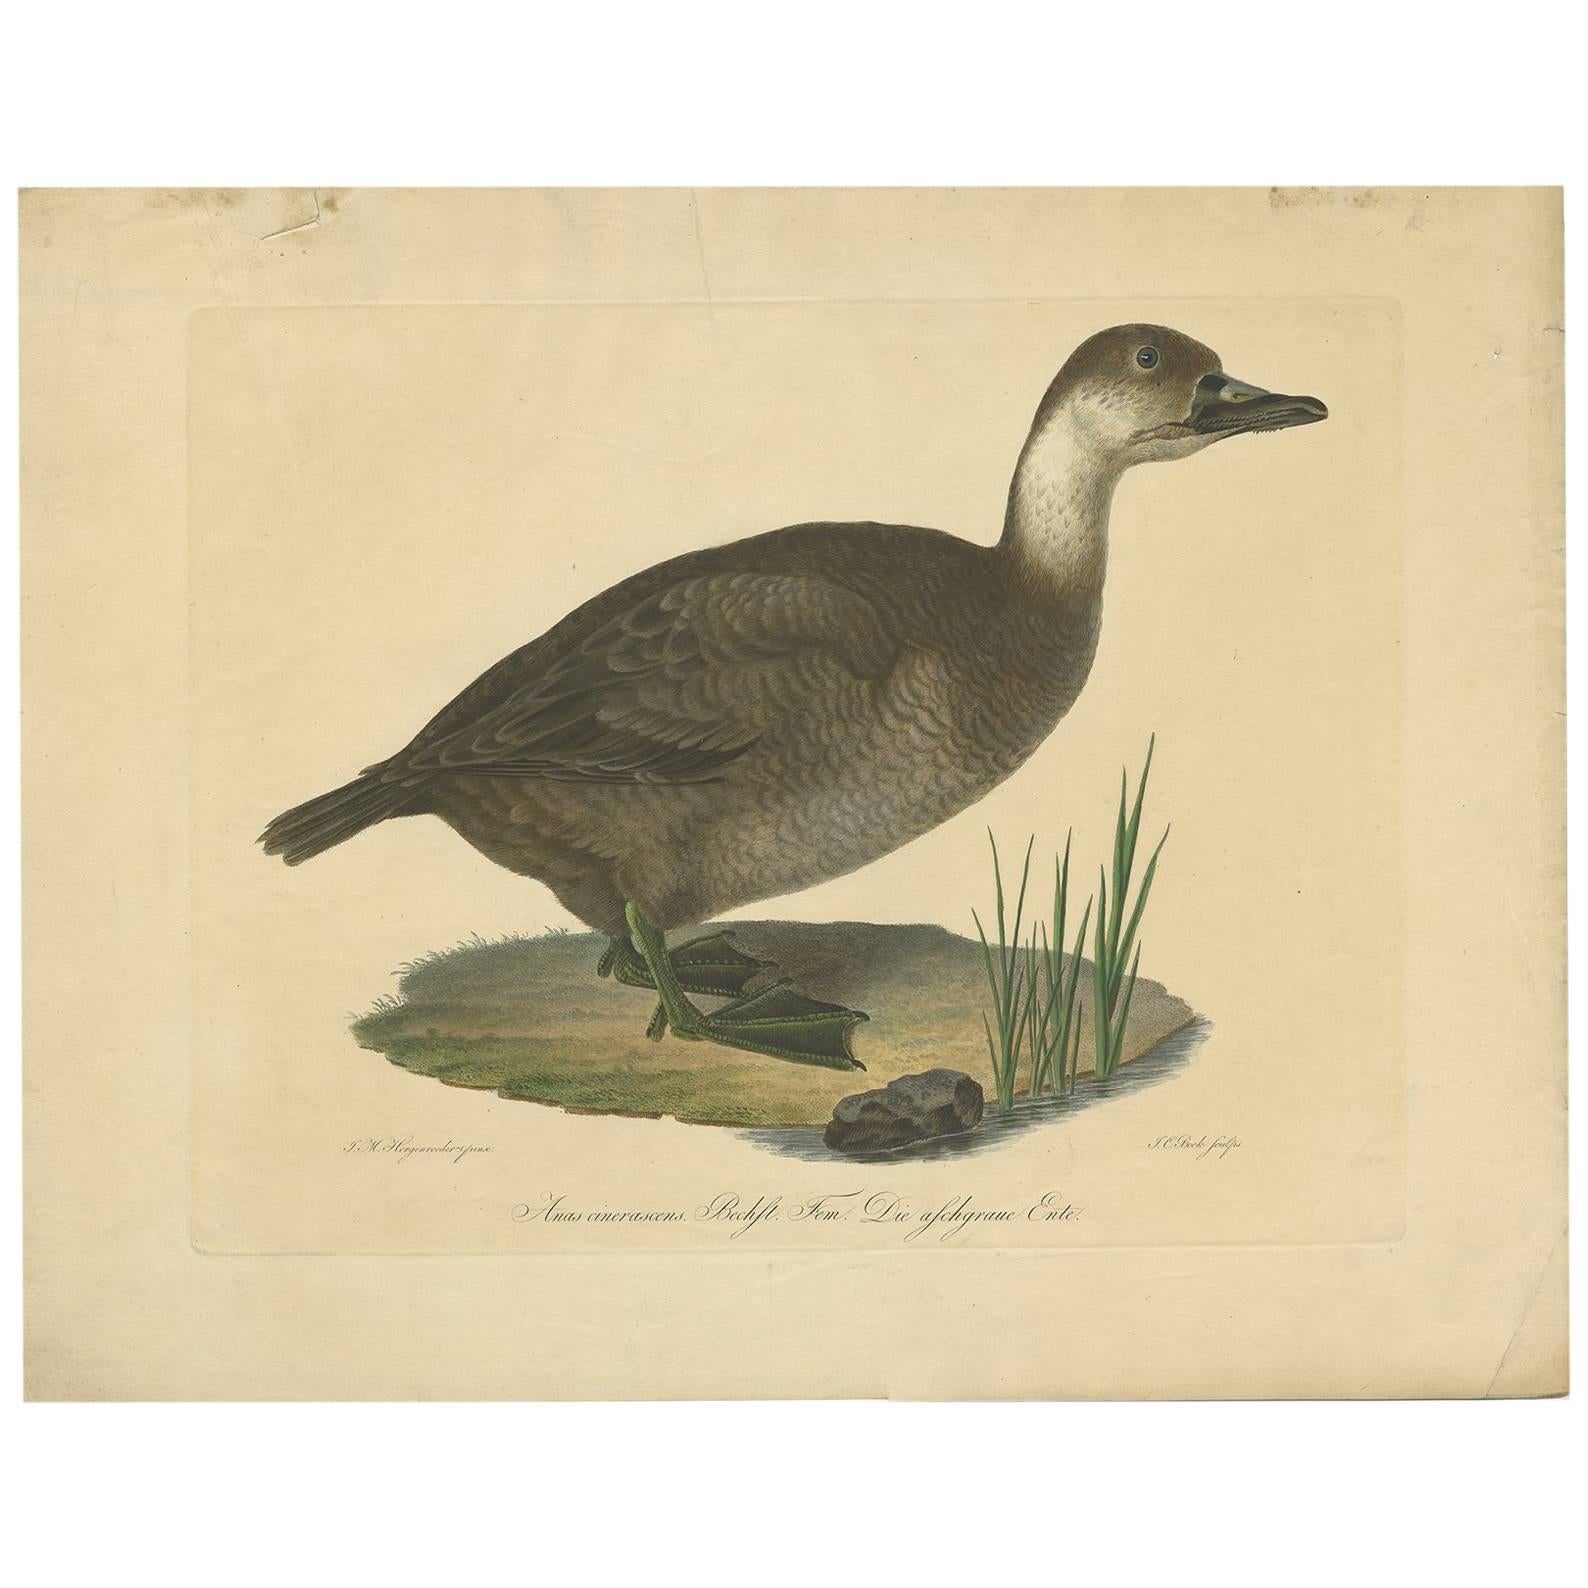 Impression ancienne d'un canard par J.C. Bock, datant d'environ 1800